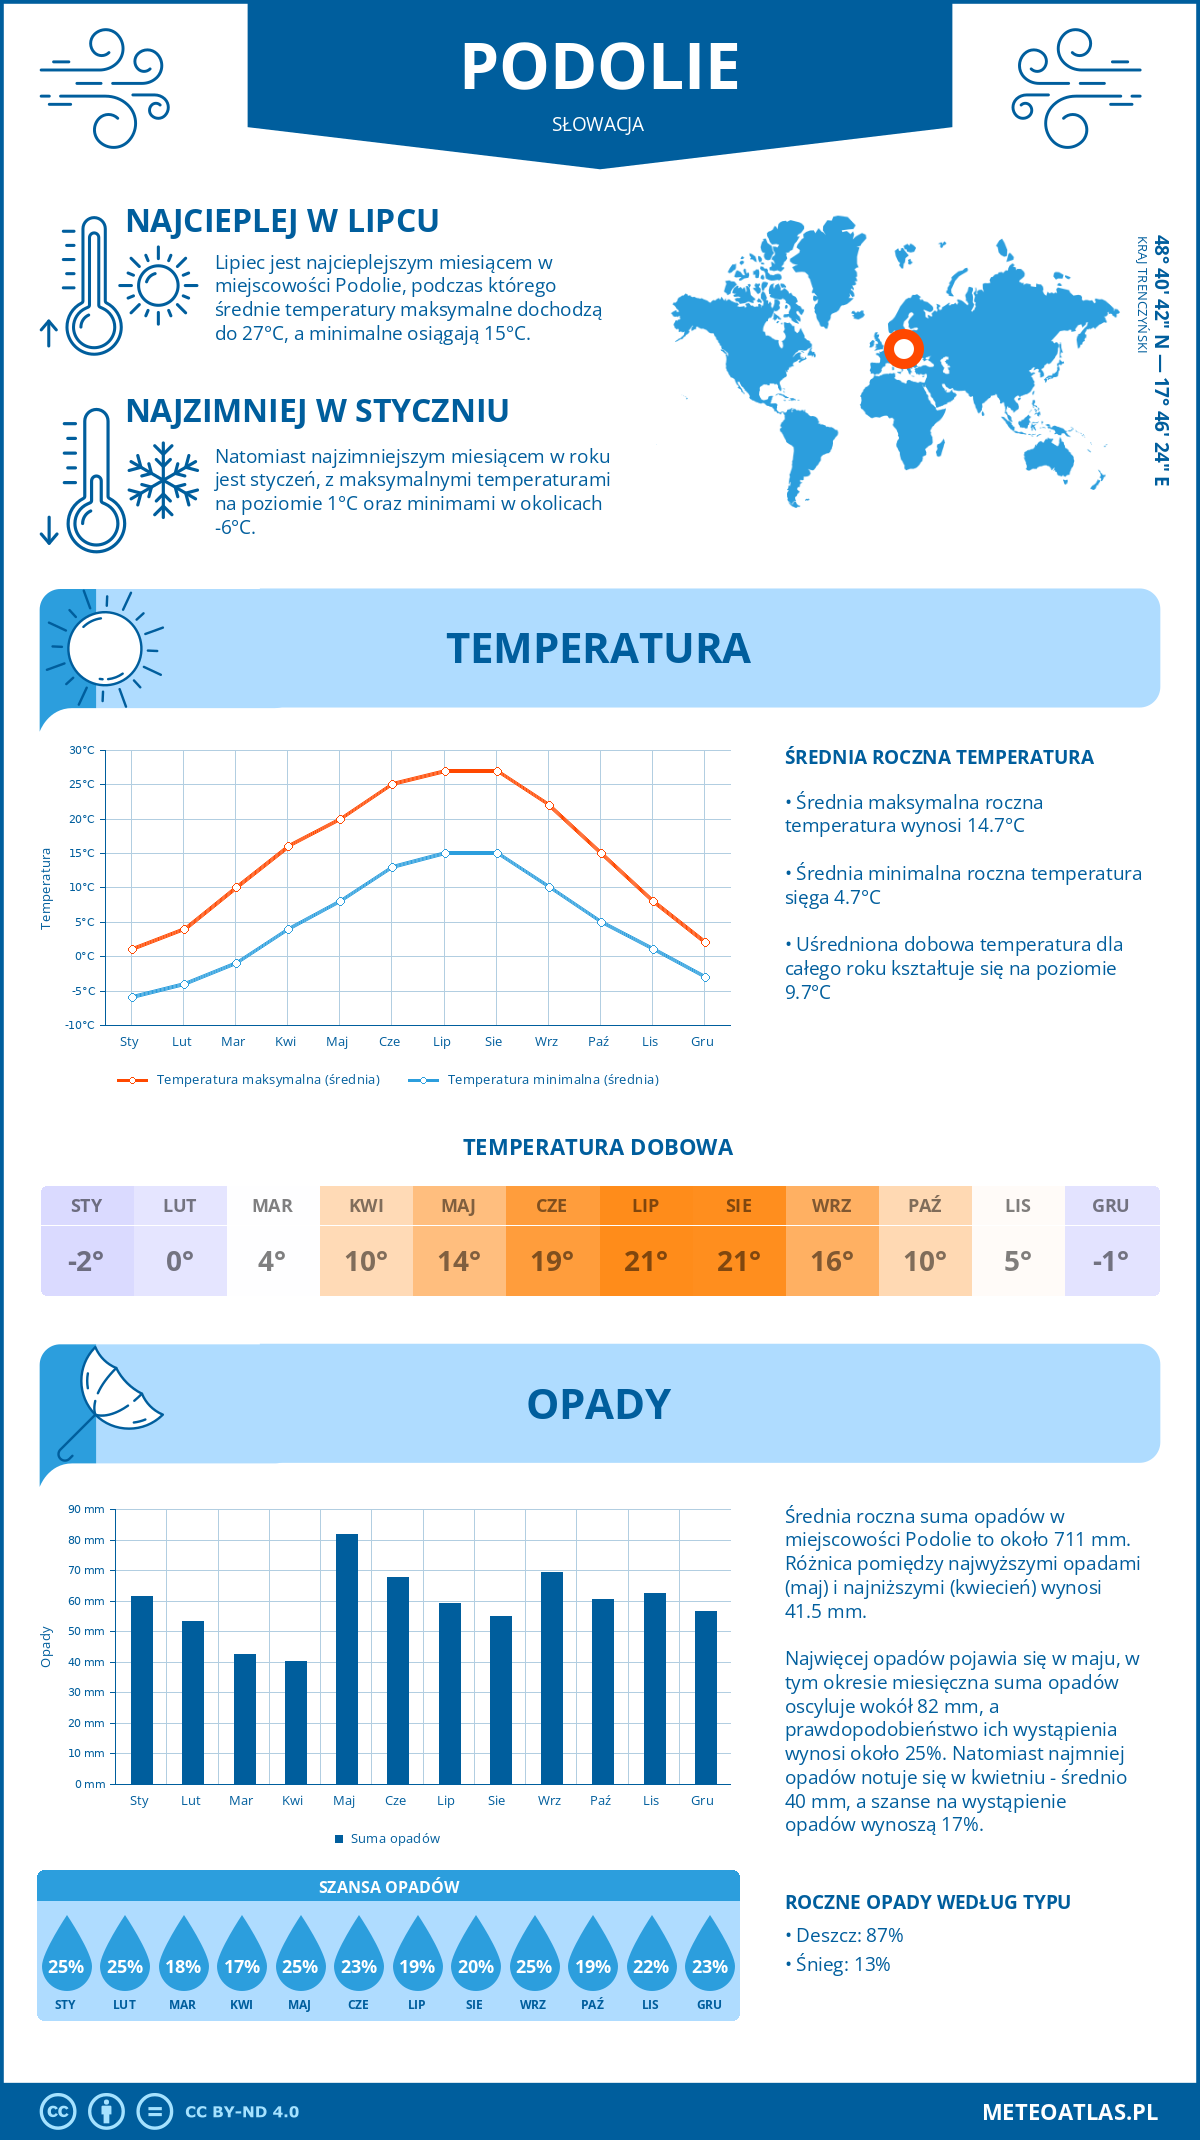 Pogoda Podolie (Słowacja). Temperatura oraz opady.